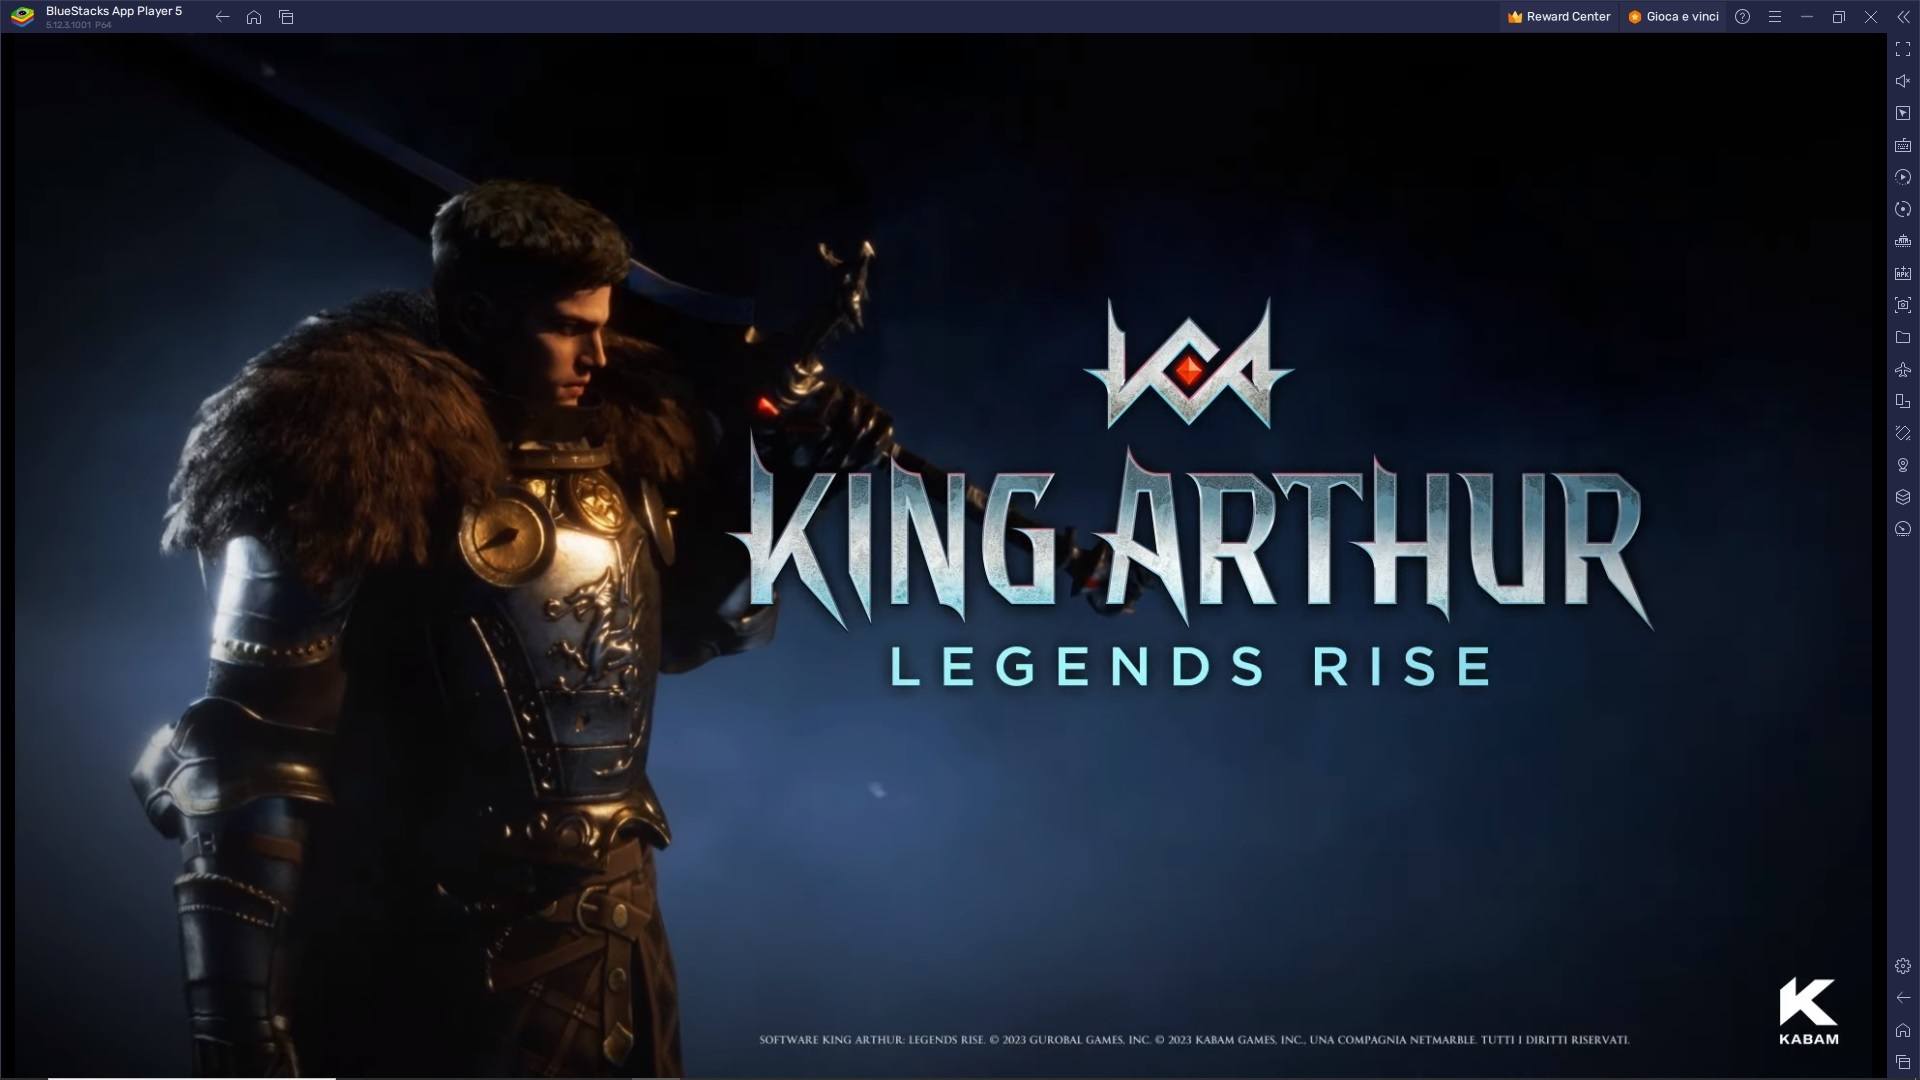 King Arthur: Legends Rise - La Leggenda Arturiana in salsa RPG è disponibile con BlueStacks